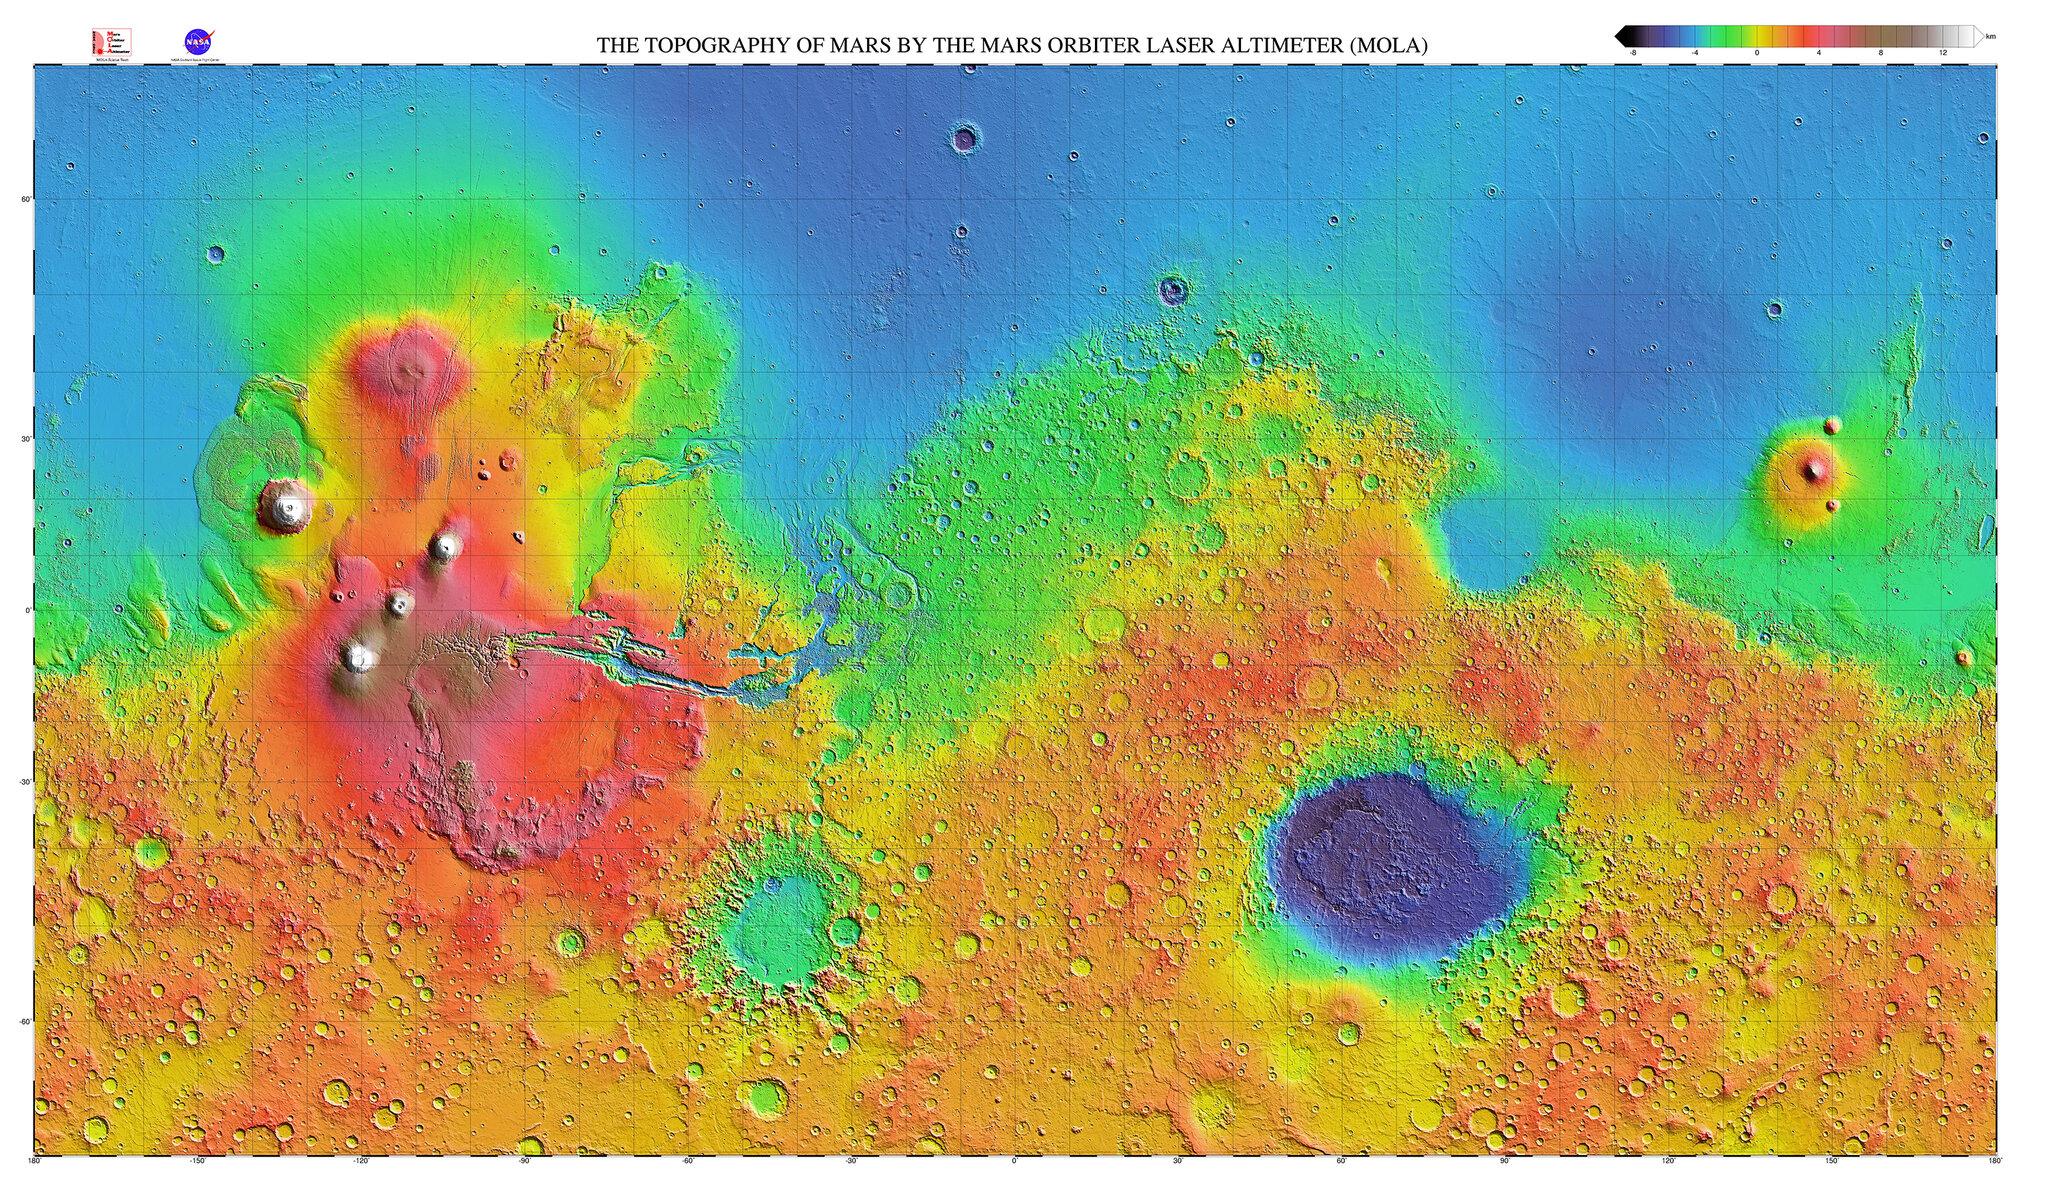 Mars Orbiter Laser Altimeter/NASA